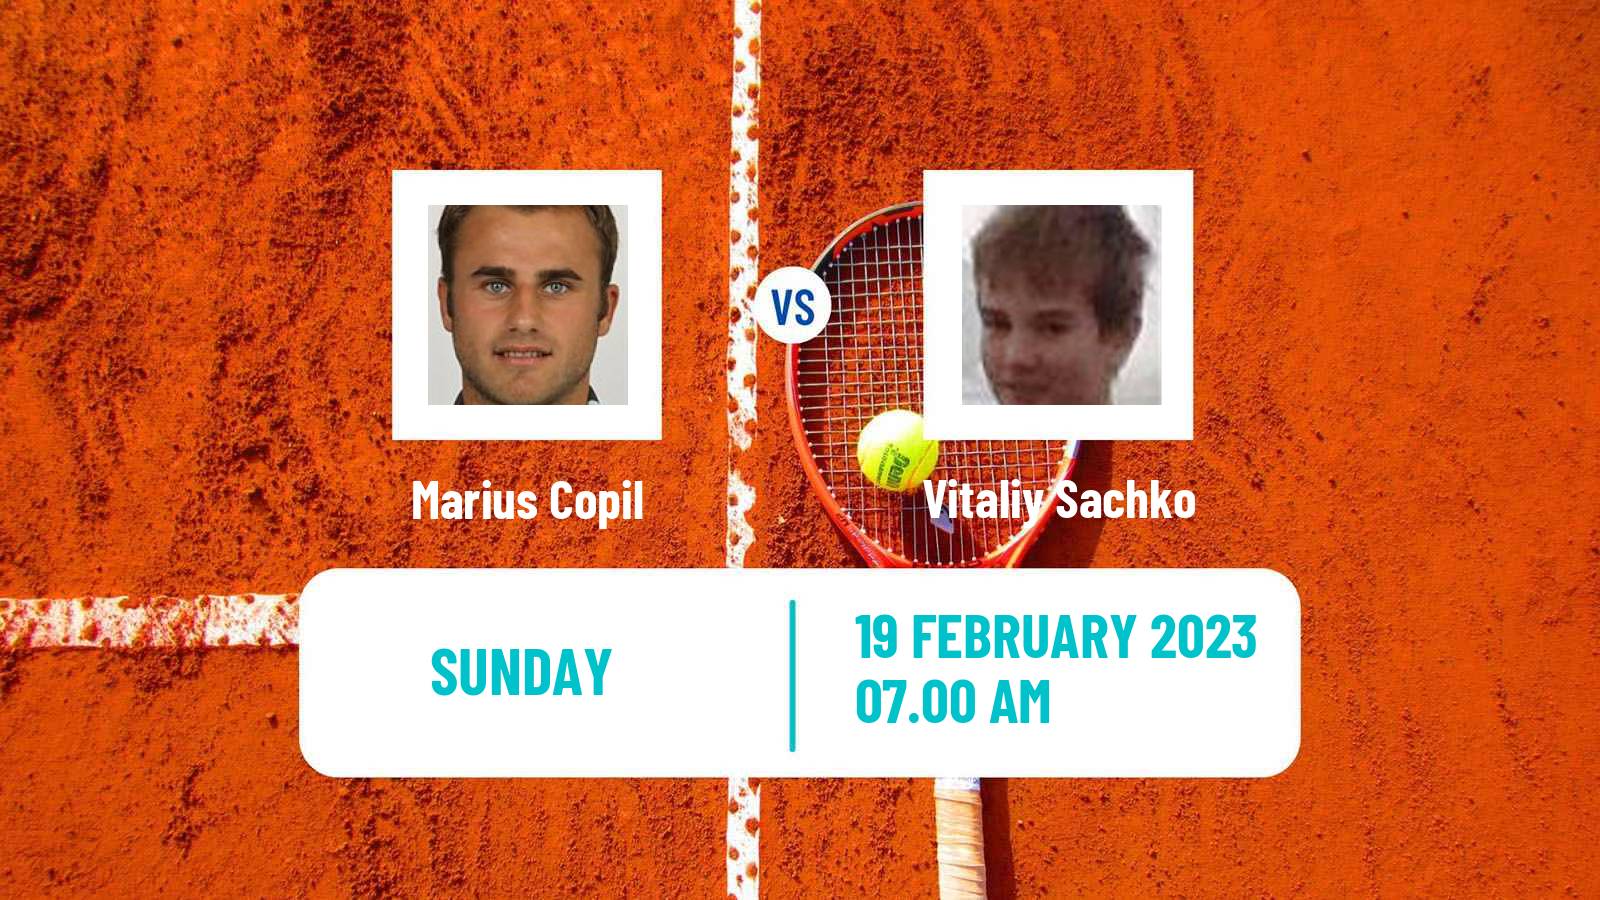 Tennis ATP Challenger Marius Copil - Vitaliy Sachko